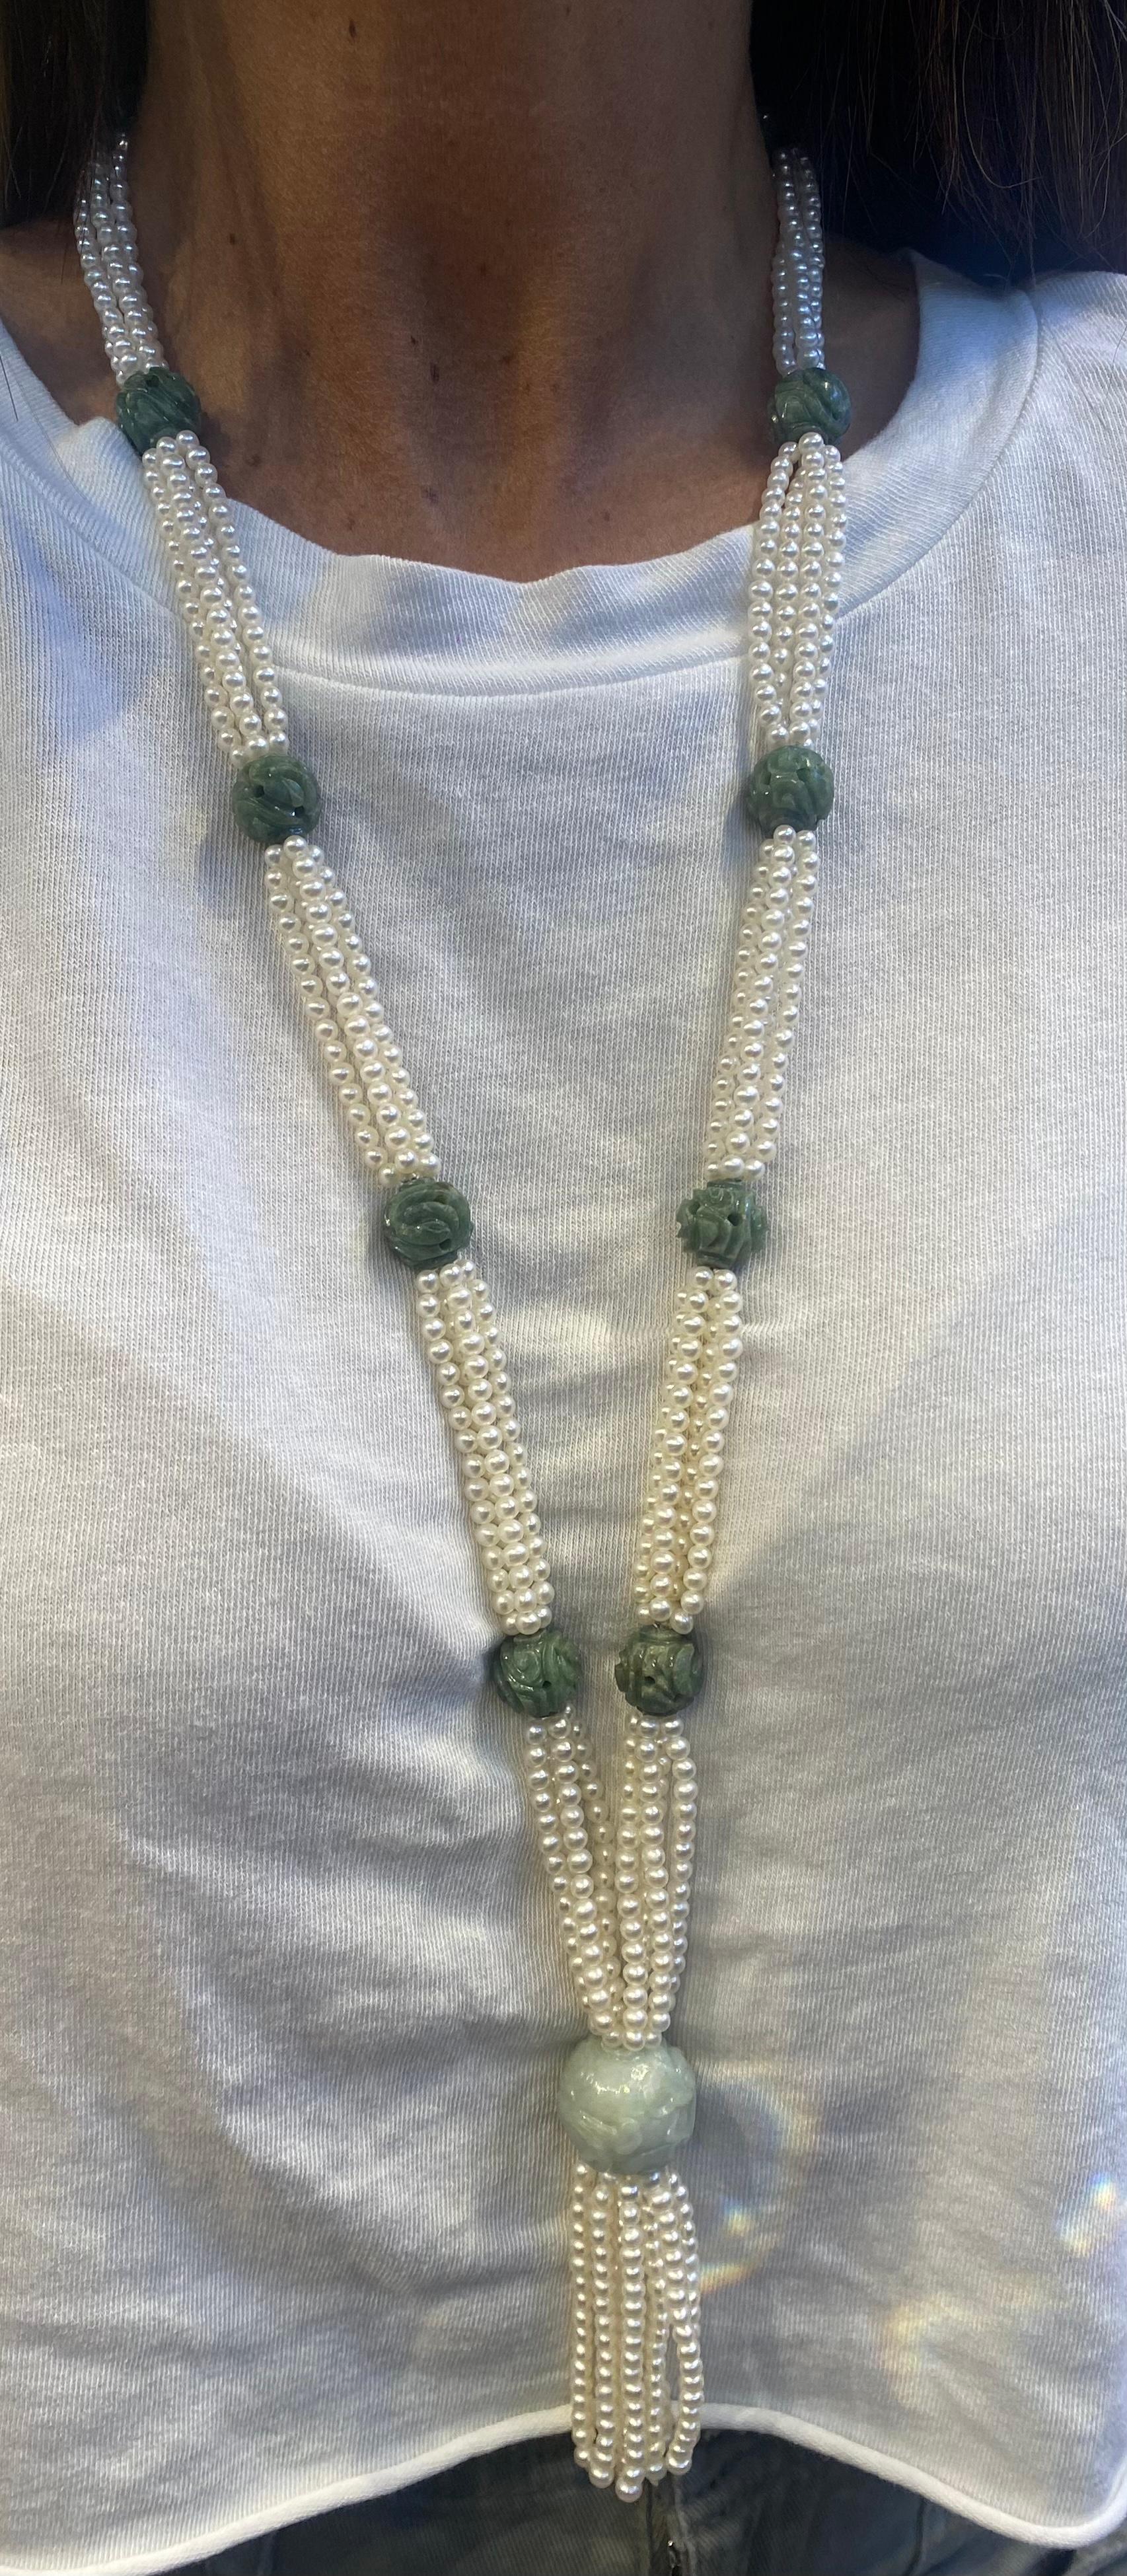 Collier à pompon en jade sculpté et perles 

Collier composé de 4 rangs de perles et de 12 jades sculptés

Mesures : Longueur du cou : 30
                            Longueur du pompon de 3,5 pouces

